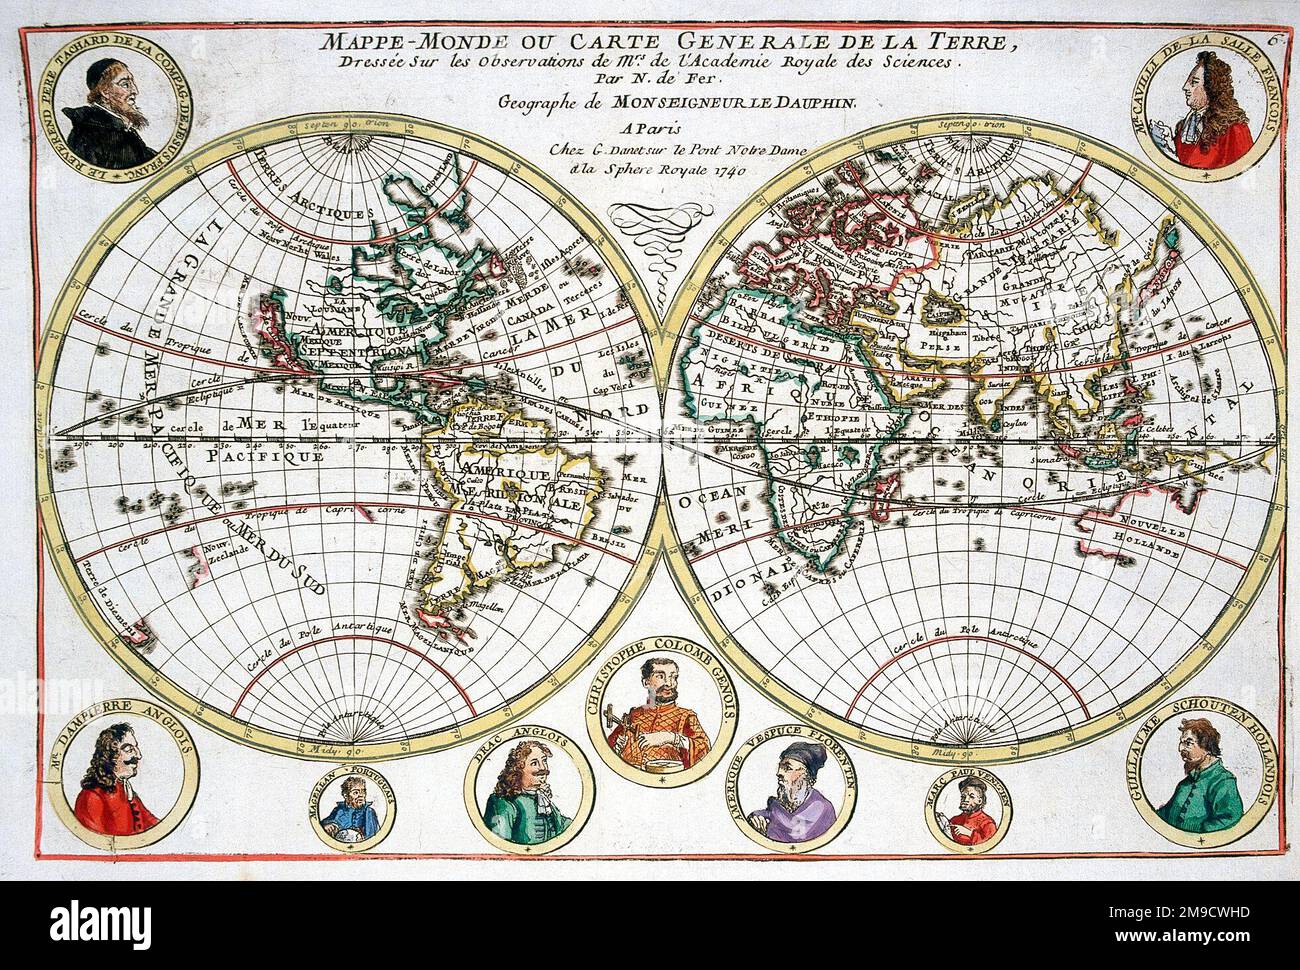 Carte du monde du 18th siècle avec portraits d'explorateurs - hémisphères mondiaux - Mappe monde ou carte générale de la Terre Banque D'Images